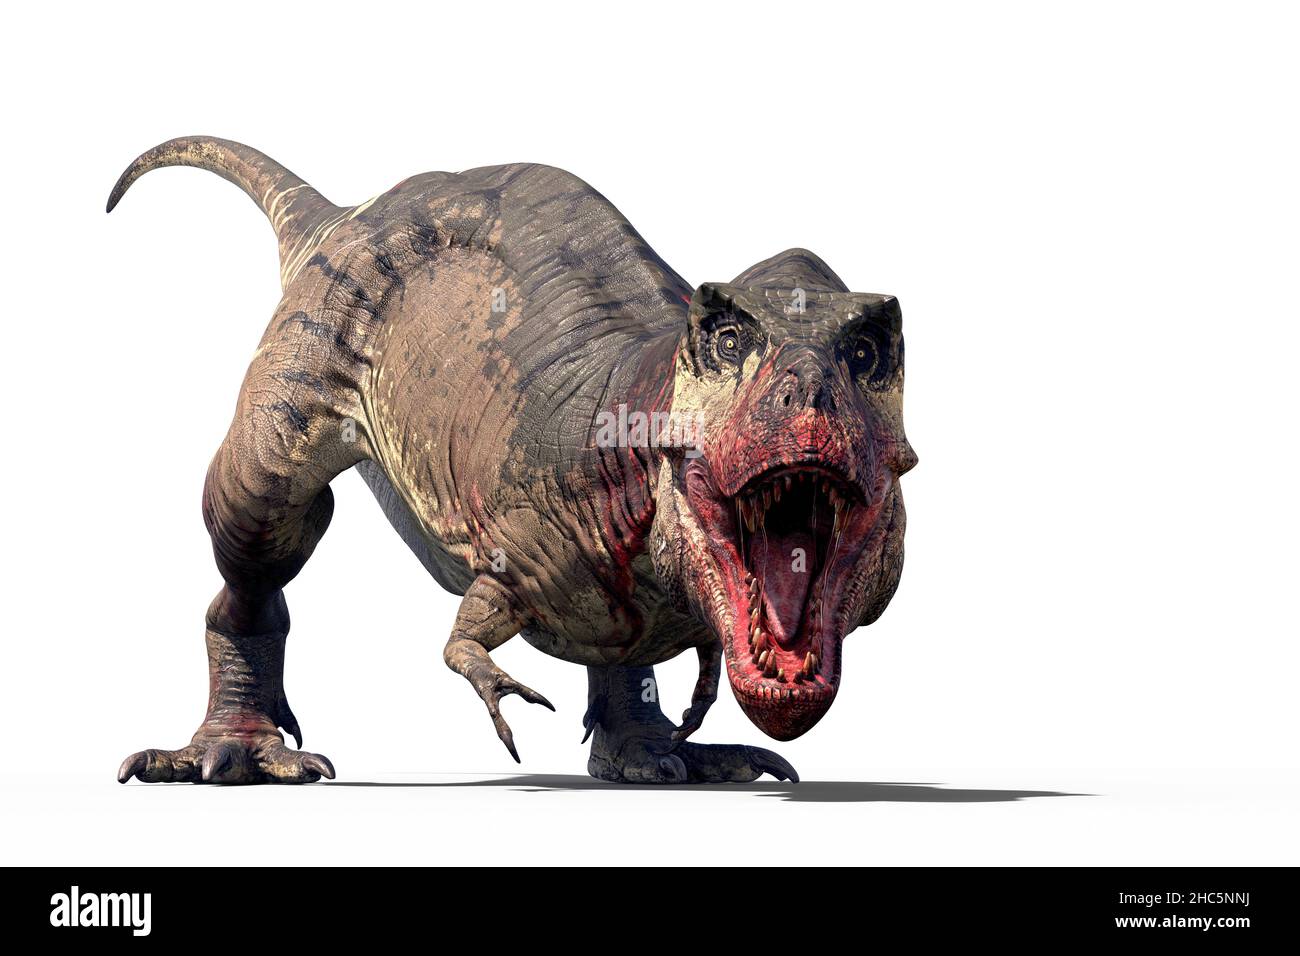 Tyrannosaurus rex dinosaure, illustration.Ce dinosaure de théropode bipédale était l'un des plus grands prédateurs de l'histoire, mesurant plus de 12 mètres de longueur de la tête à la queue et pesant jusqu'à 8 tonnes.On pense qu'il a combiné la chasse et l'évacuation pour se nourrir.Ses fossiles sont trouvés en Amérique du Nord et datent d'il y a environ 67 millions d'années, pendant la période du Crétacé.Souvent connu sous le nom de T-Rex. Banque D'Images